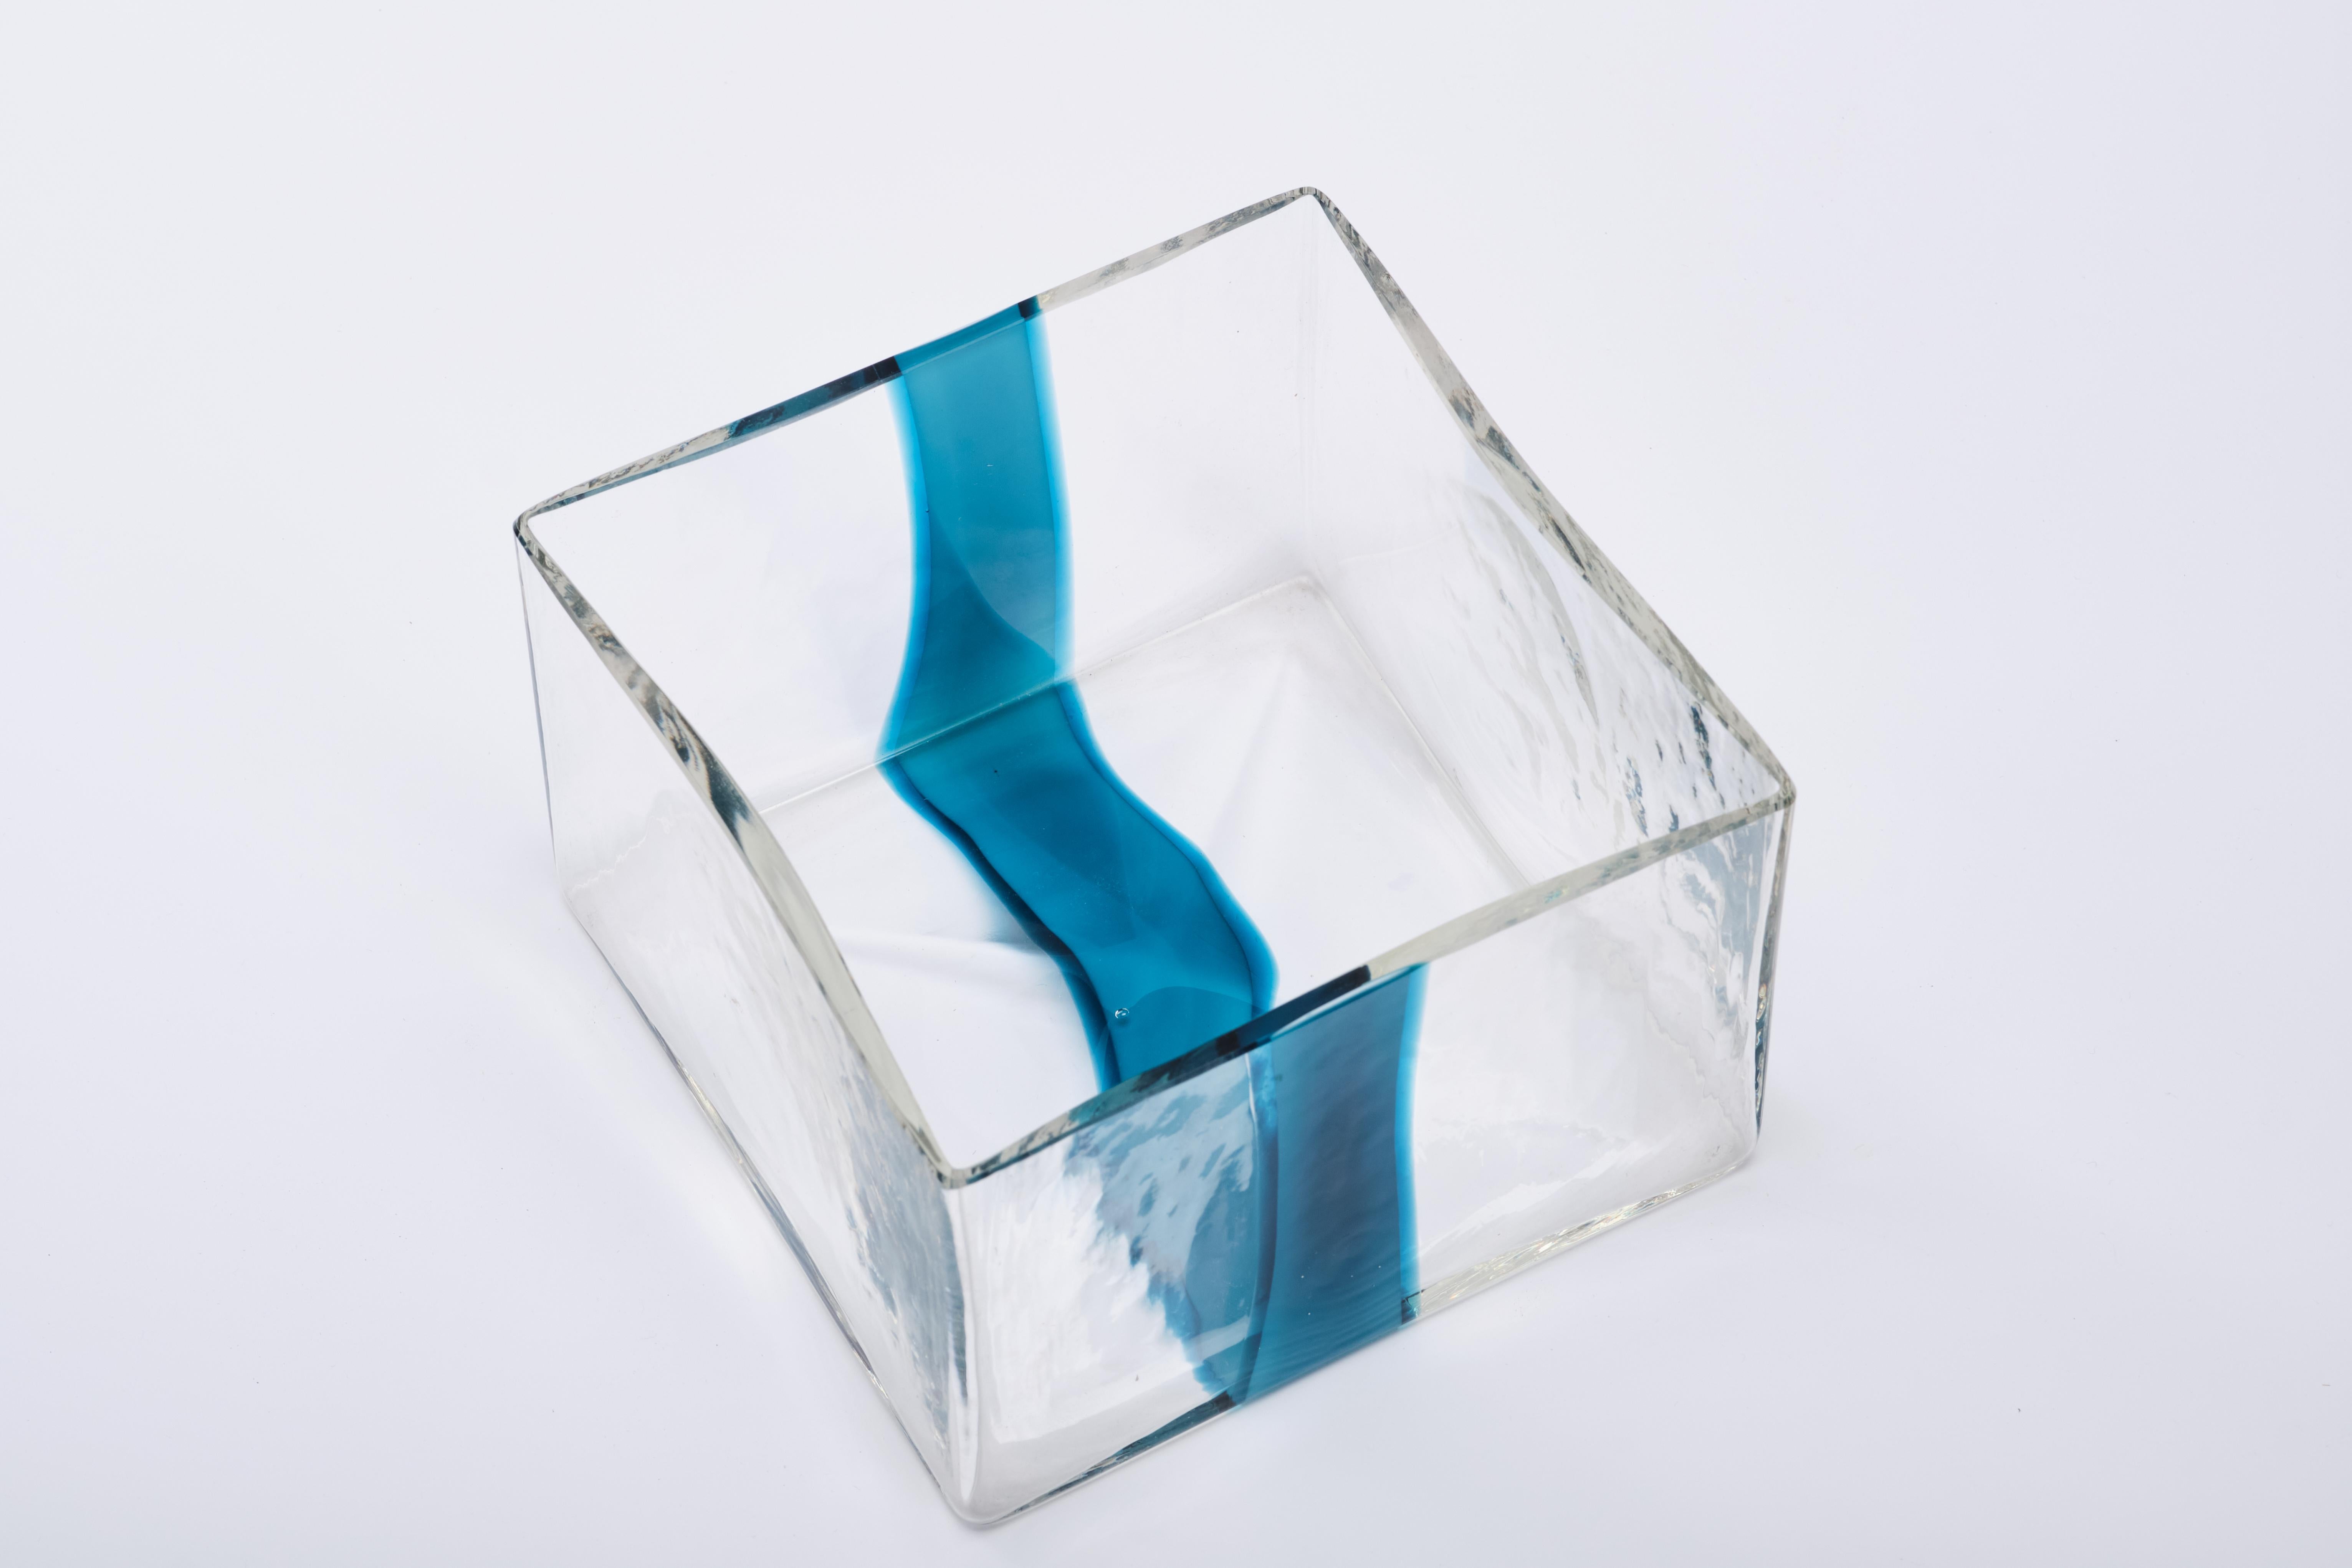 Pierre Cardin Vase for Venini - Murano glass - Italian design 1970s For Sale 3